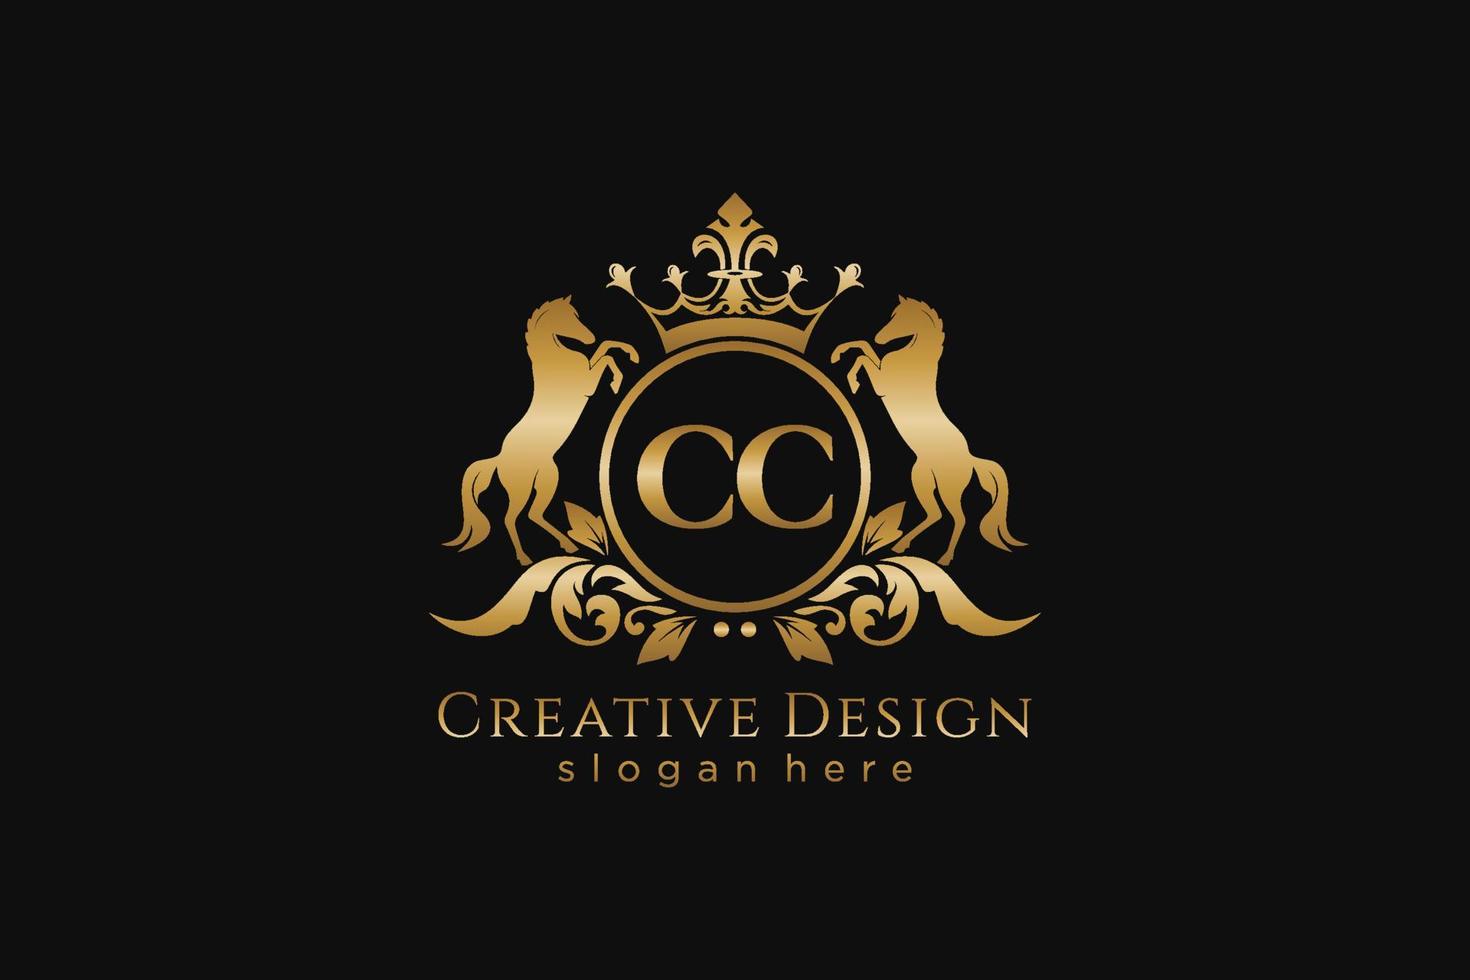 crista dourada retro cc inicial com círculo e dois cavalos, modelo de crachá com pergaminhos e coroa real - perfeito para projetos de marca luxuosos vetor